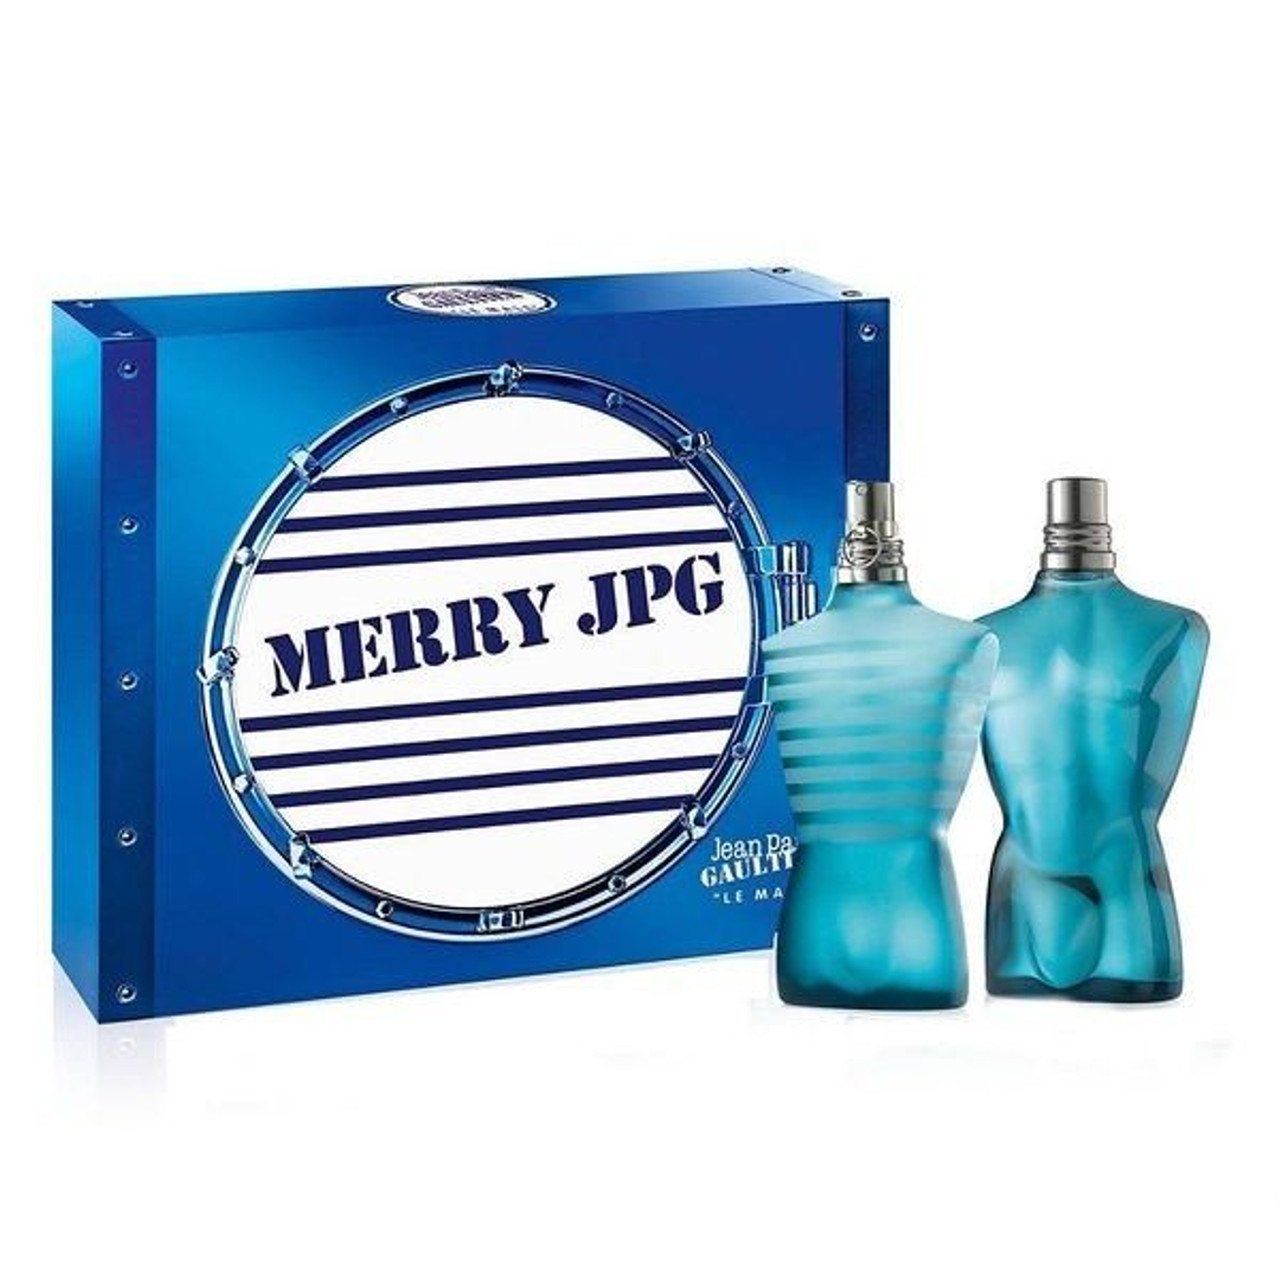 Jean-Paul-Gaultier-Le-Male-2-Pc-Merry-JPG-Gift-Set*New-JPG1008